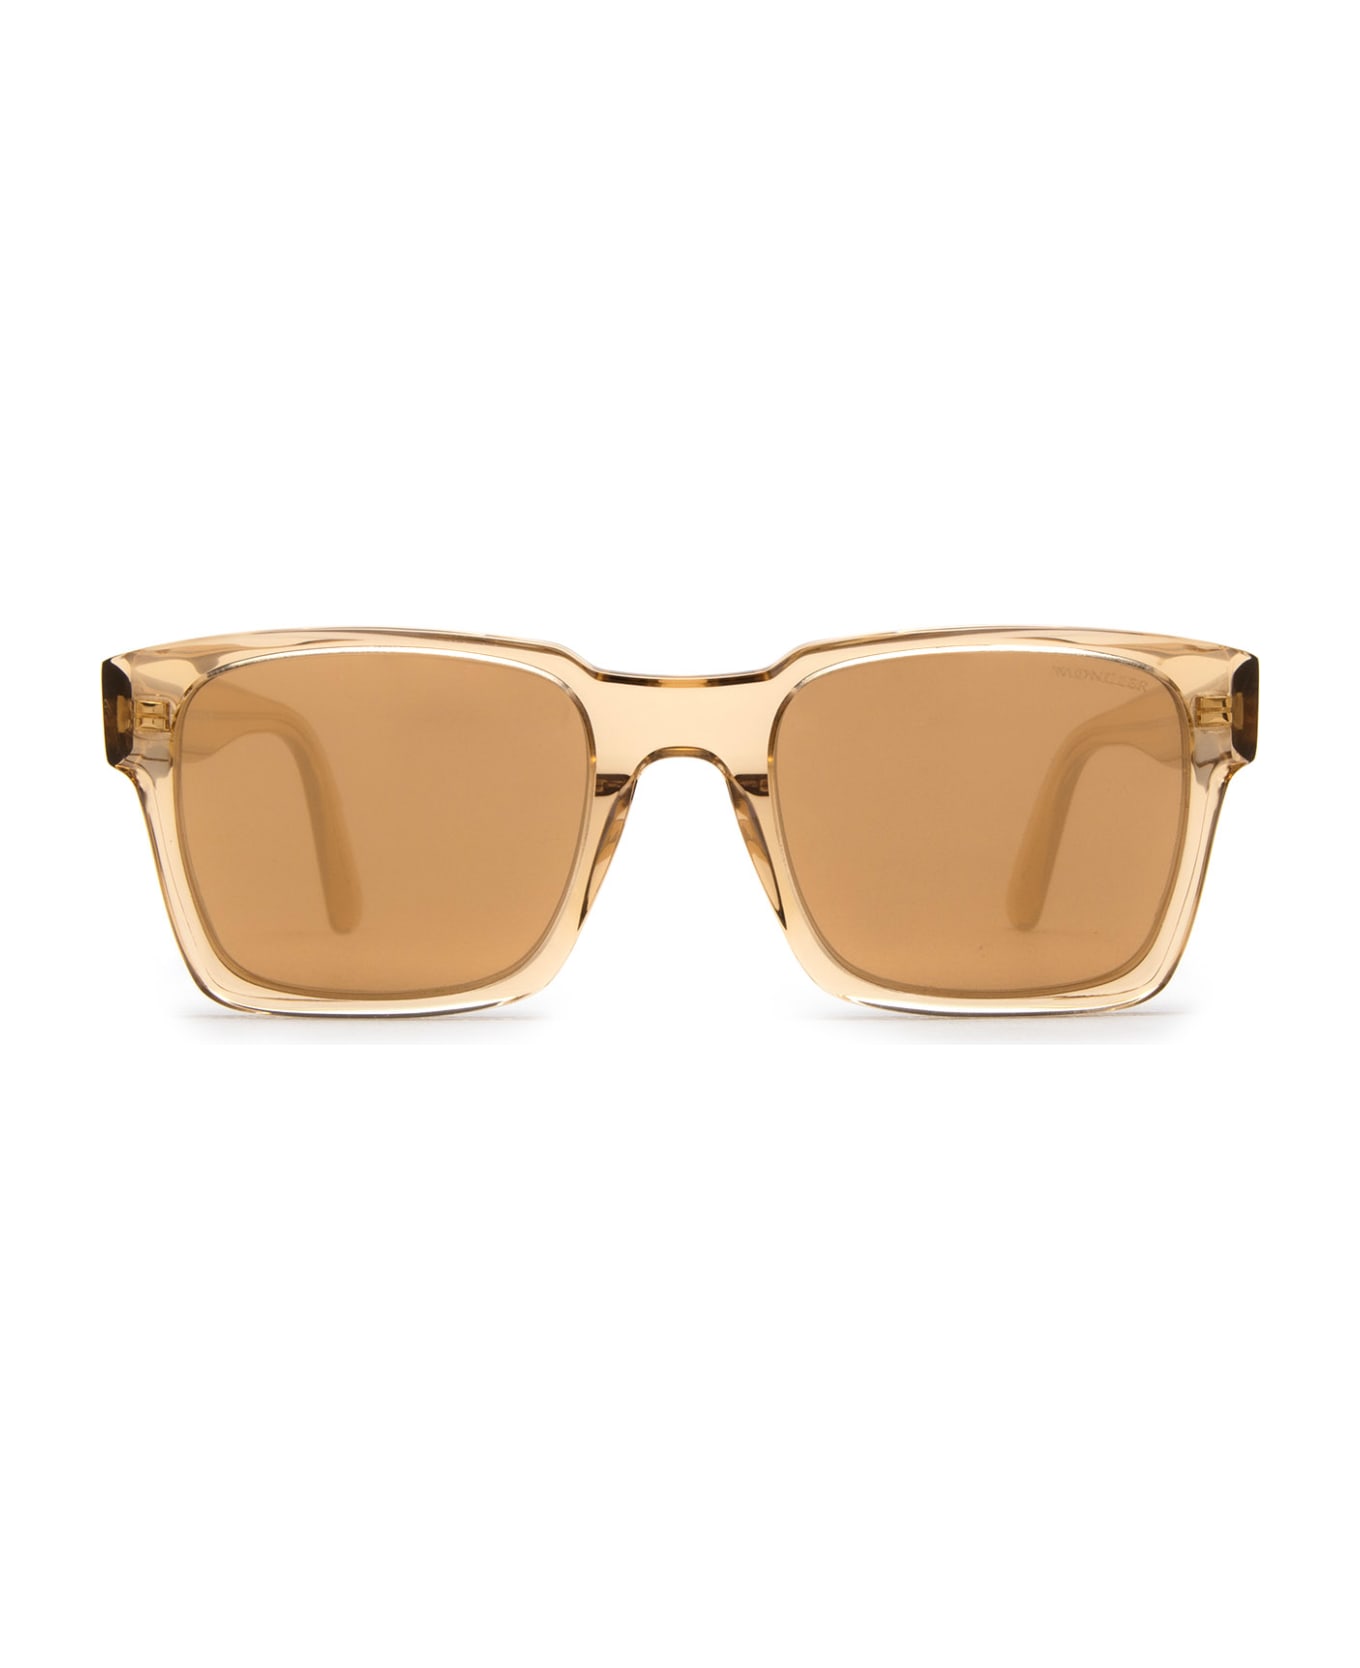 Moncler Eyewear Ml0210 Shiny Beige Sunglasses - Shiny Beige